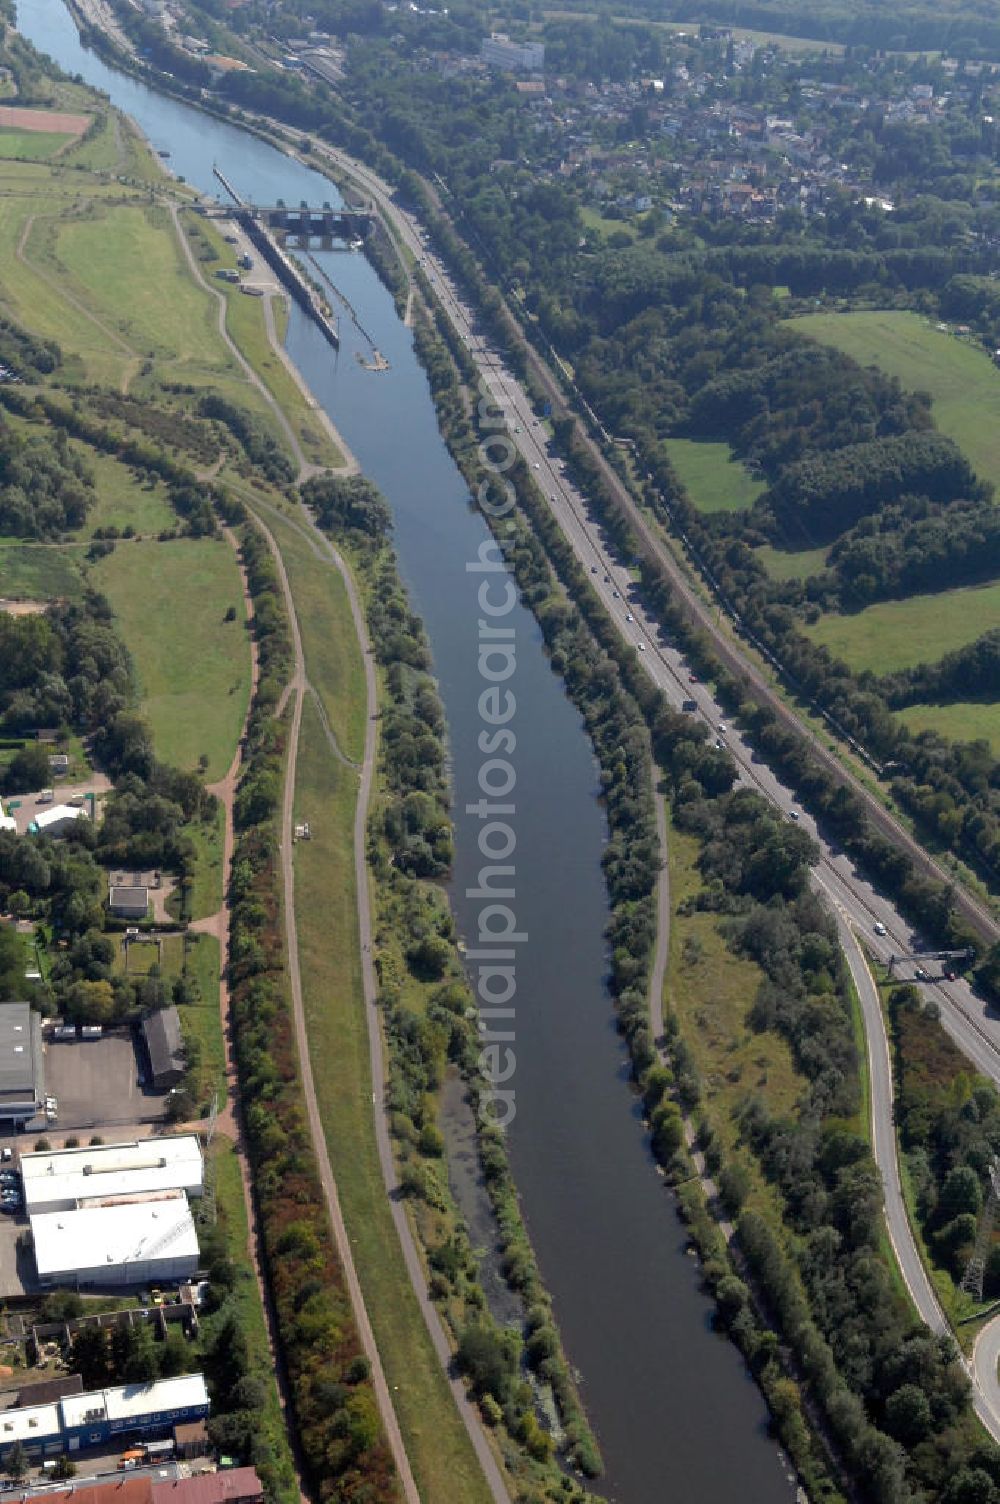 Aerial image Saarbrücken - Blick aus entlang der Saar mit der Schleuse Luisenthal in Saarbrücken im Saarland. Am linken Saarufer erstreckt sich die Autobahn 620 im Stadtteil Gersweiler. Am rechten Ufer erstreckt sich der Stadtteil Altenkessel. View from east along the Saar river.